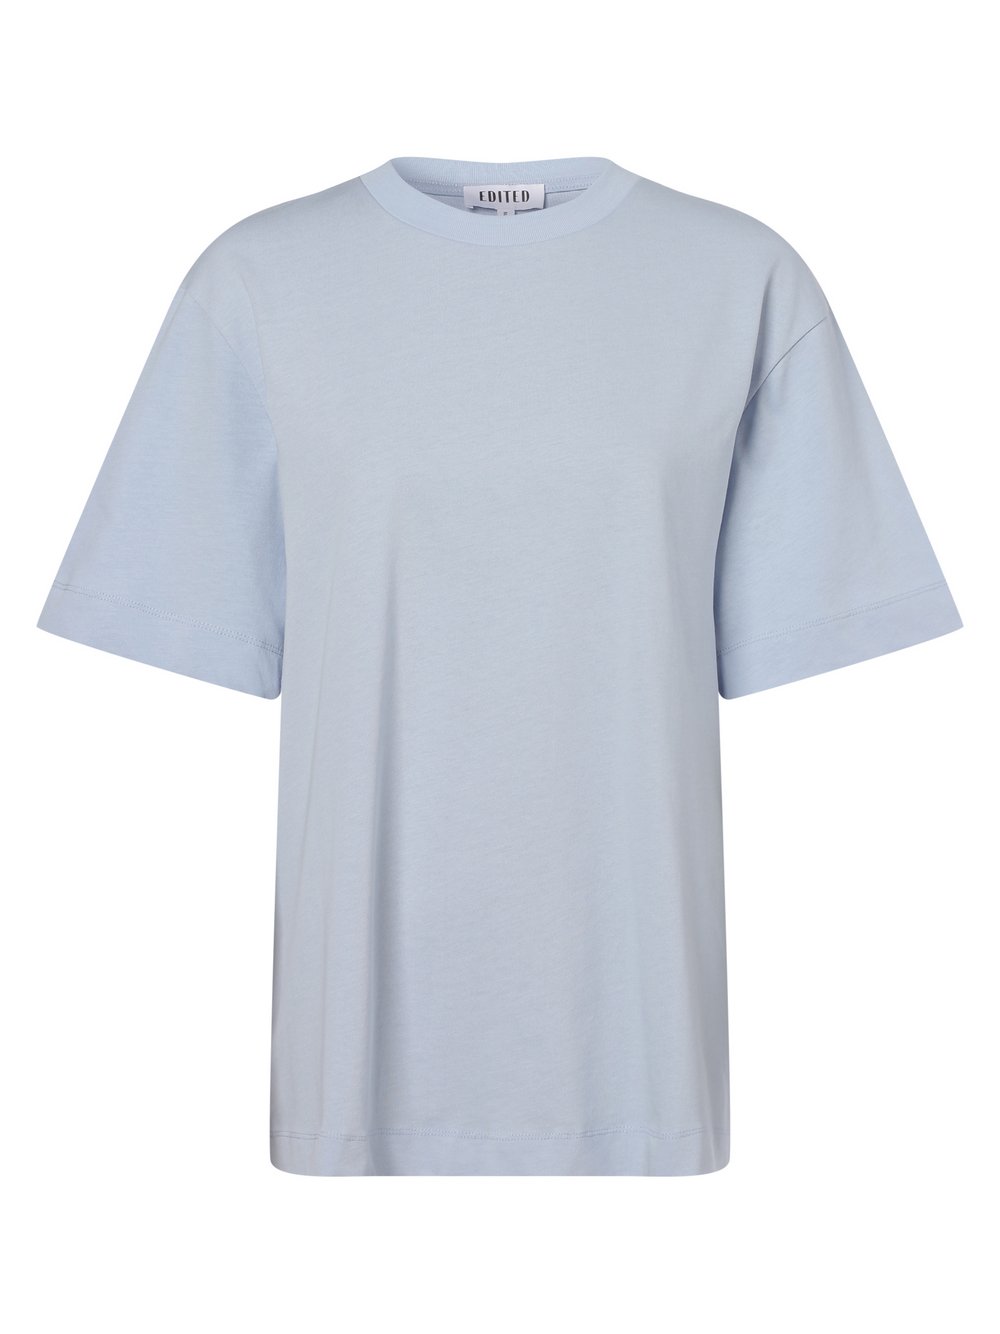 EDITED - T-shirt damski – Elisa, niebieski